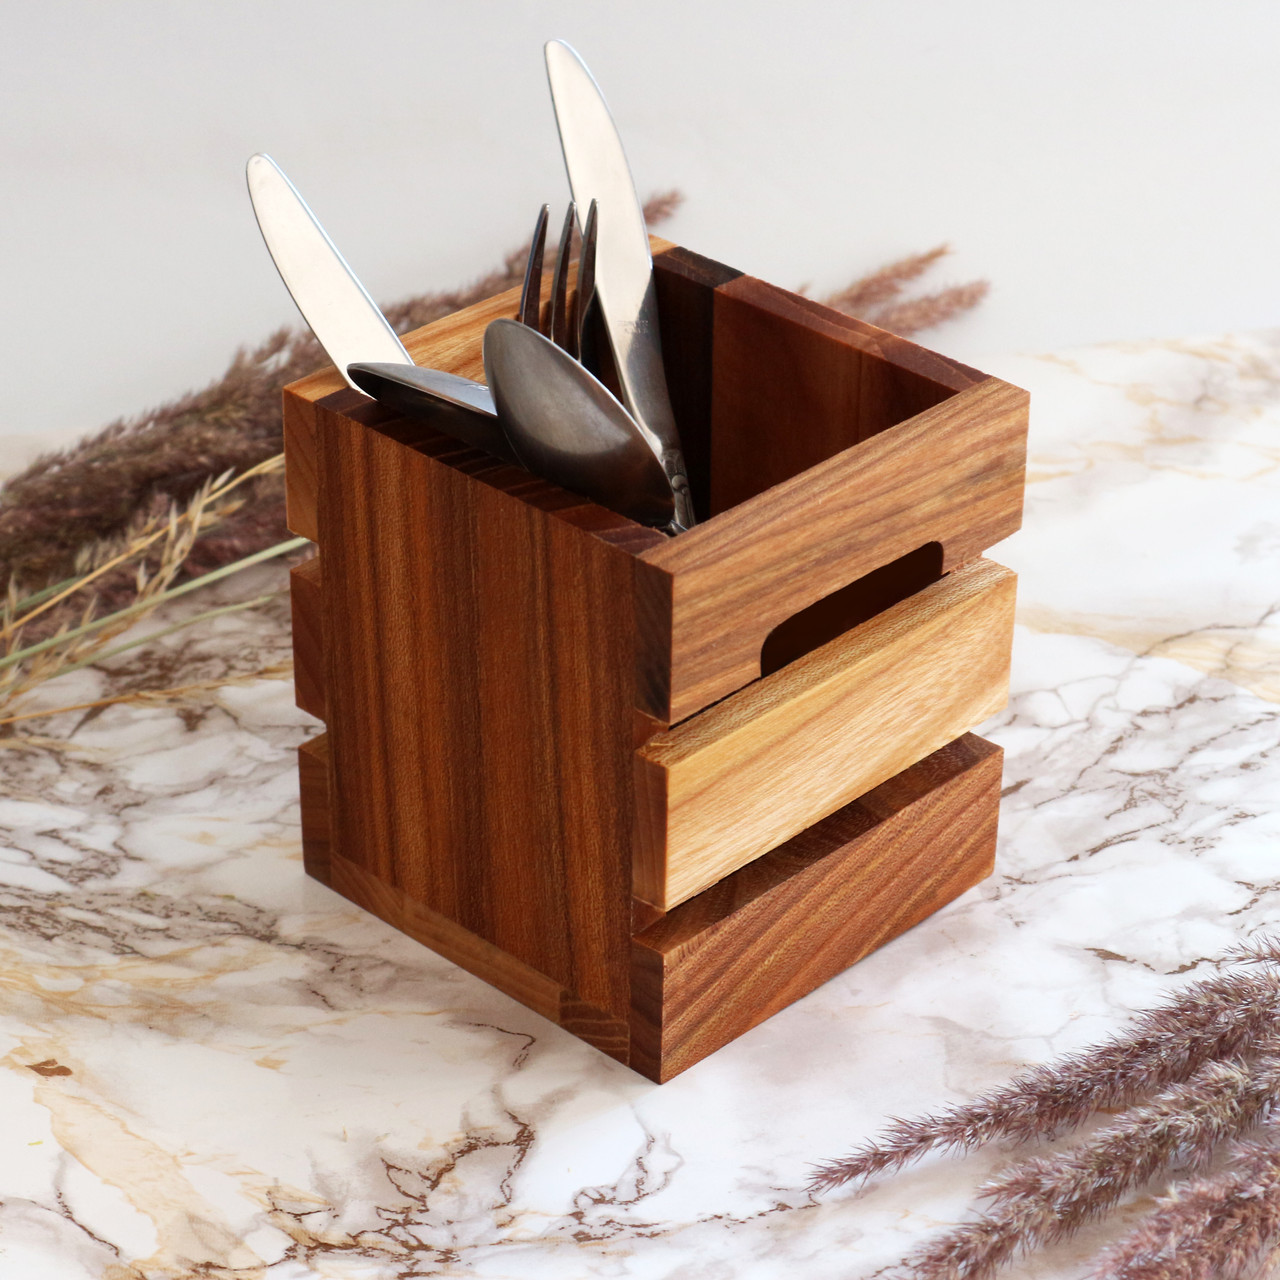 Сервірувальна настільна підставка коробочка лоток для подачі столових приборів з дерева "Кантрі мини"